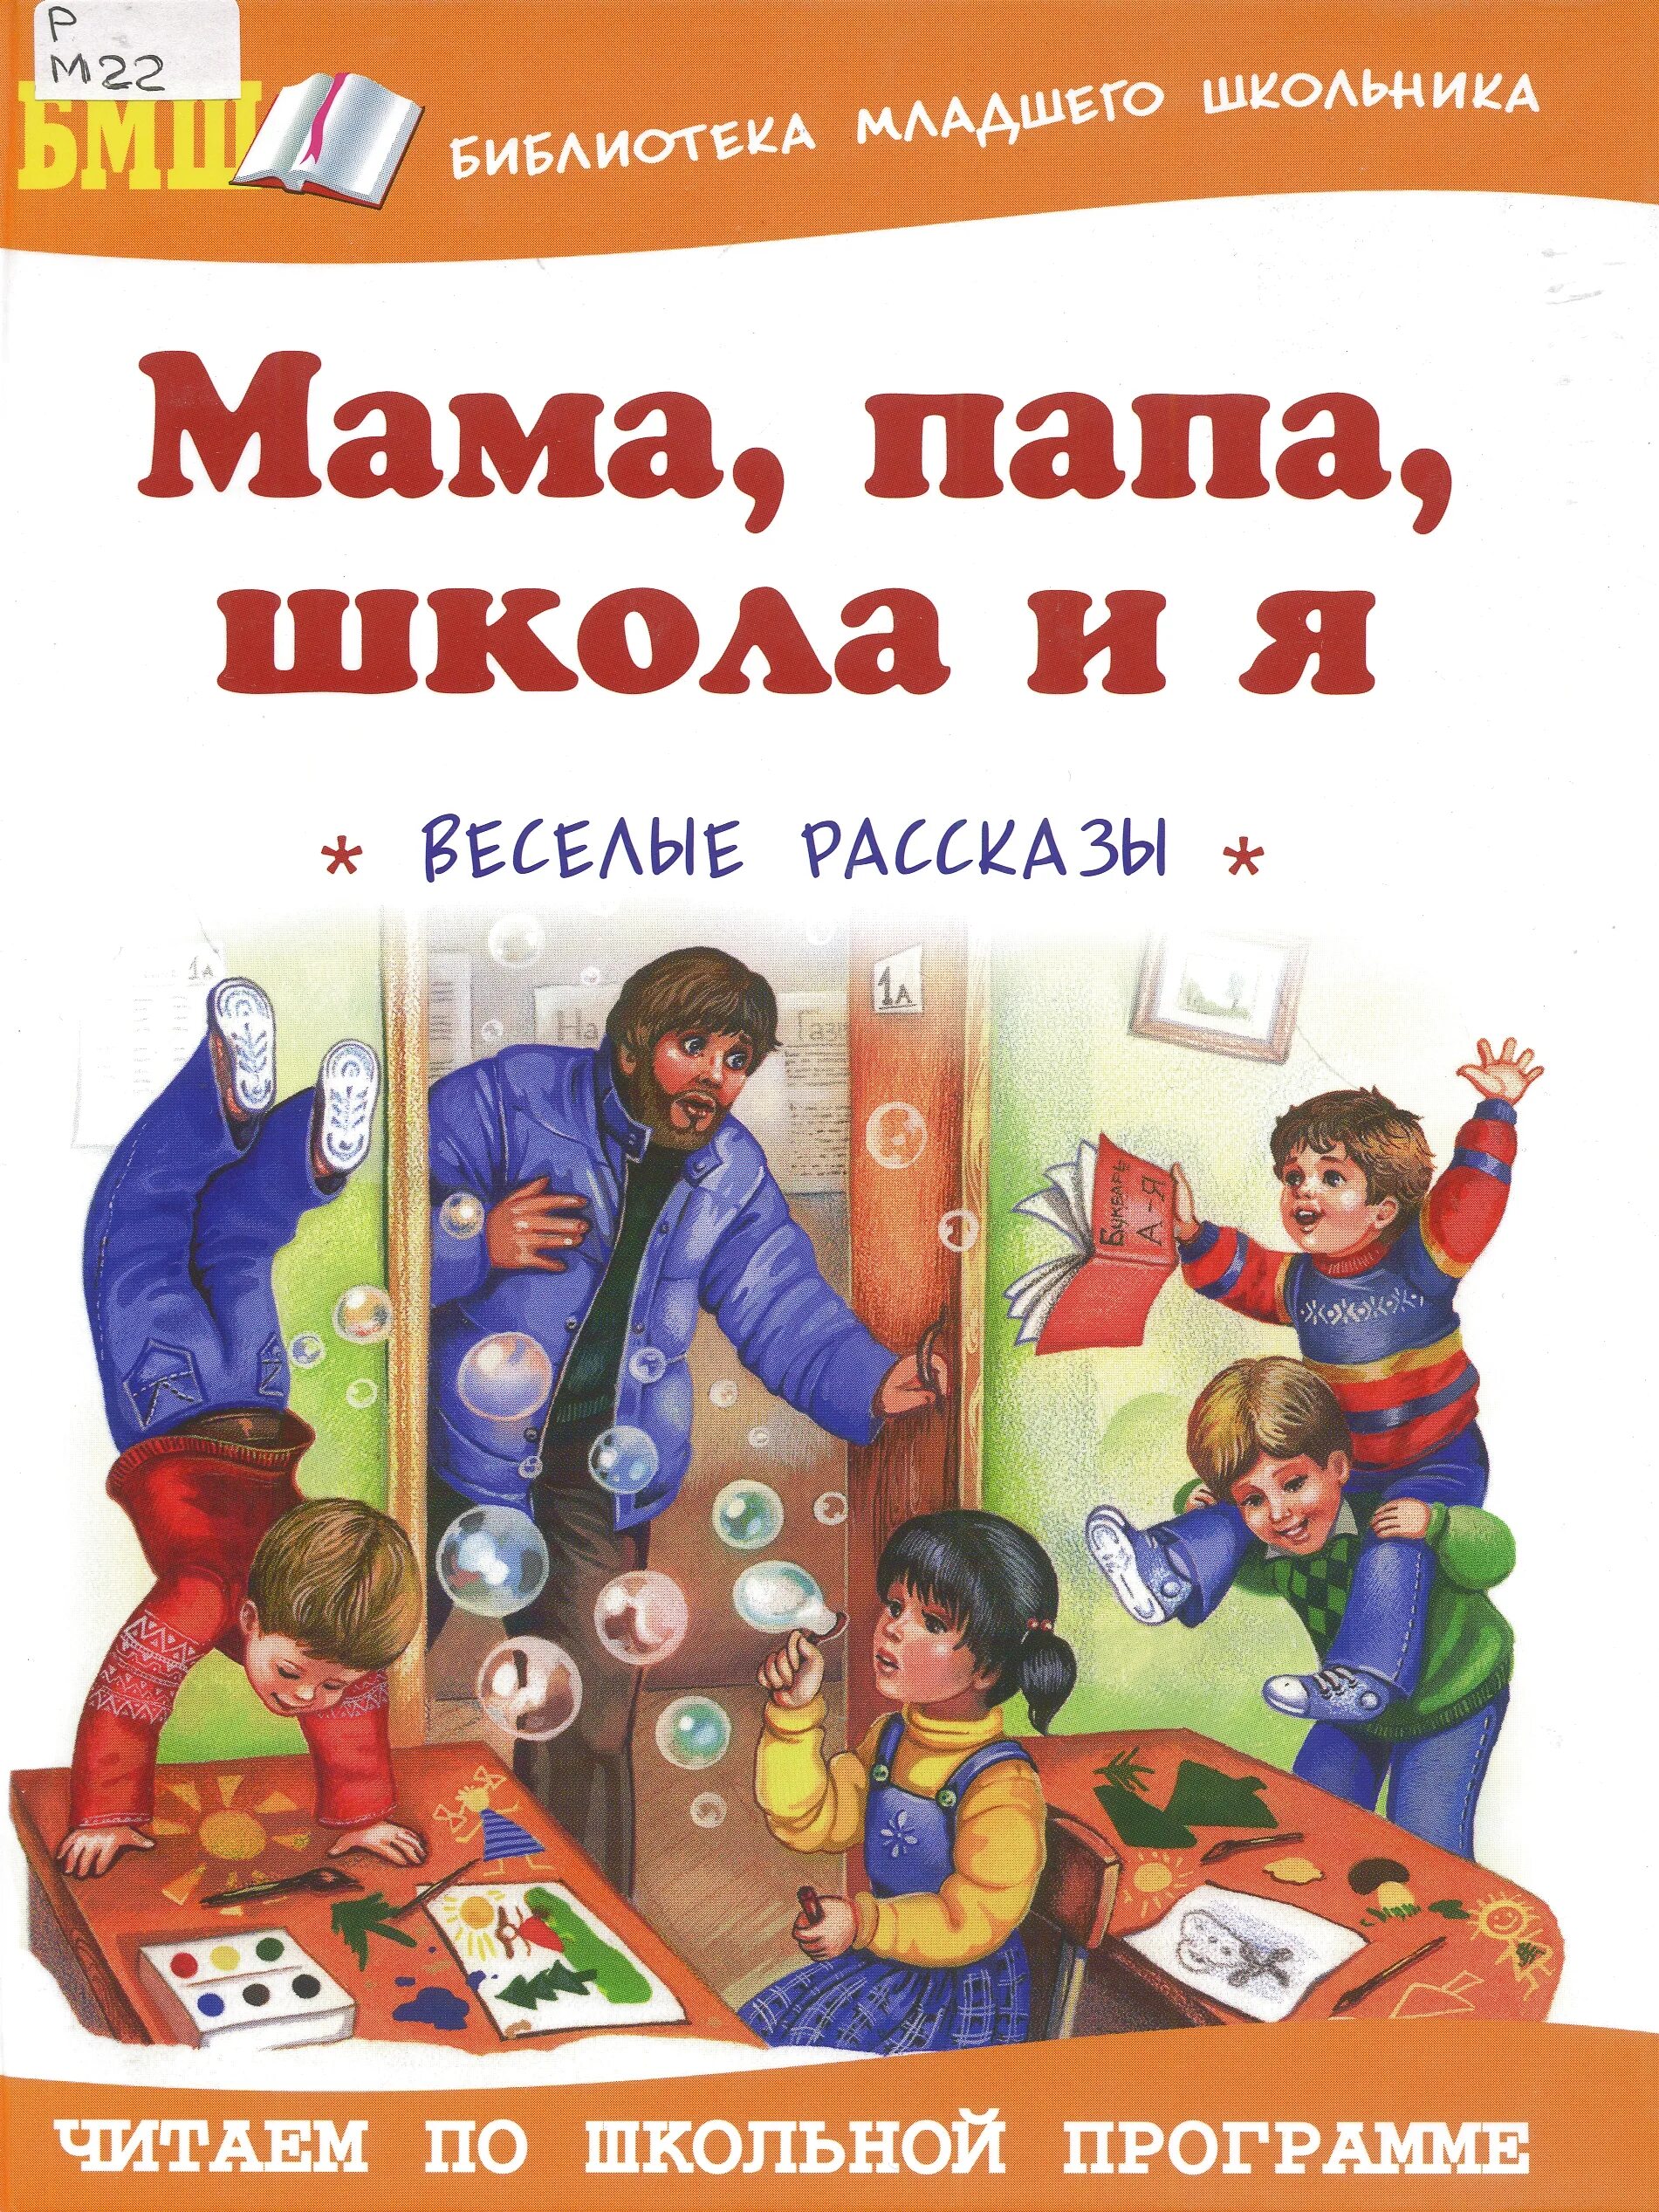 Книга с названием мама